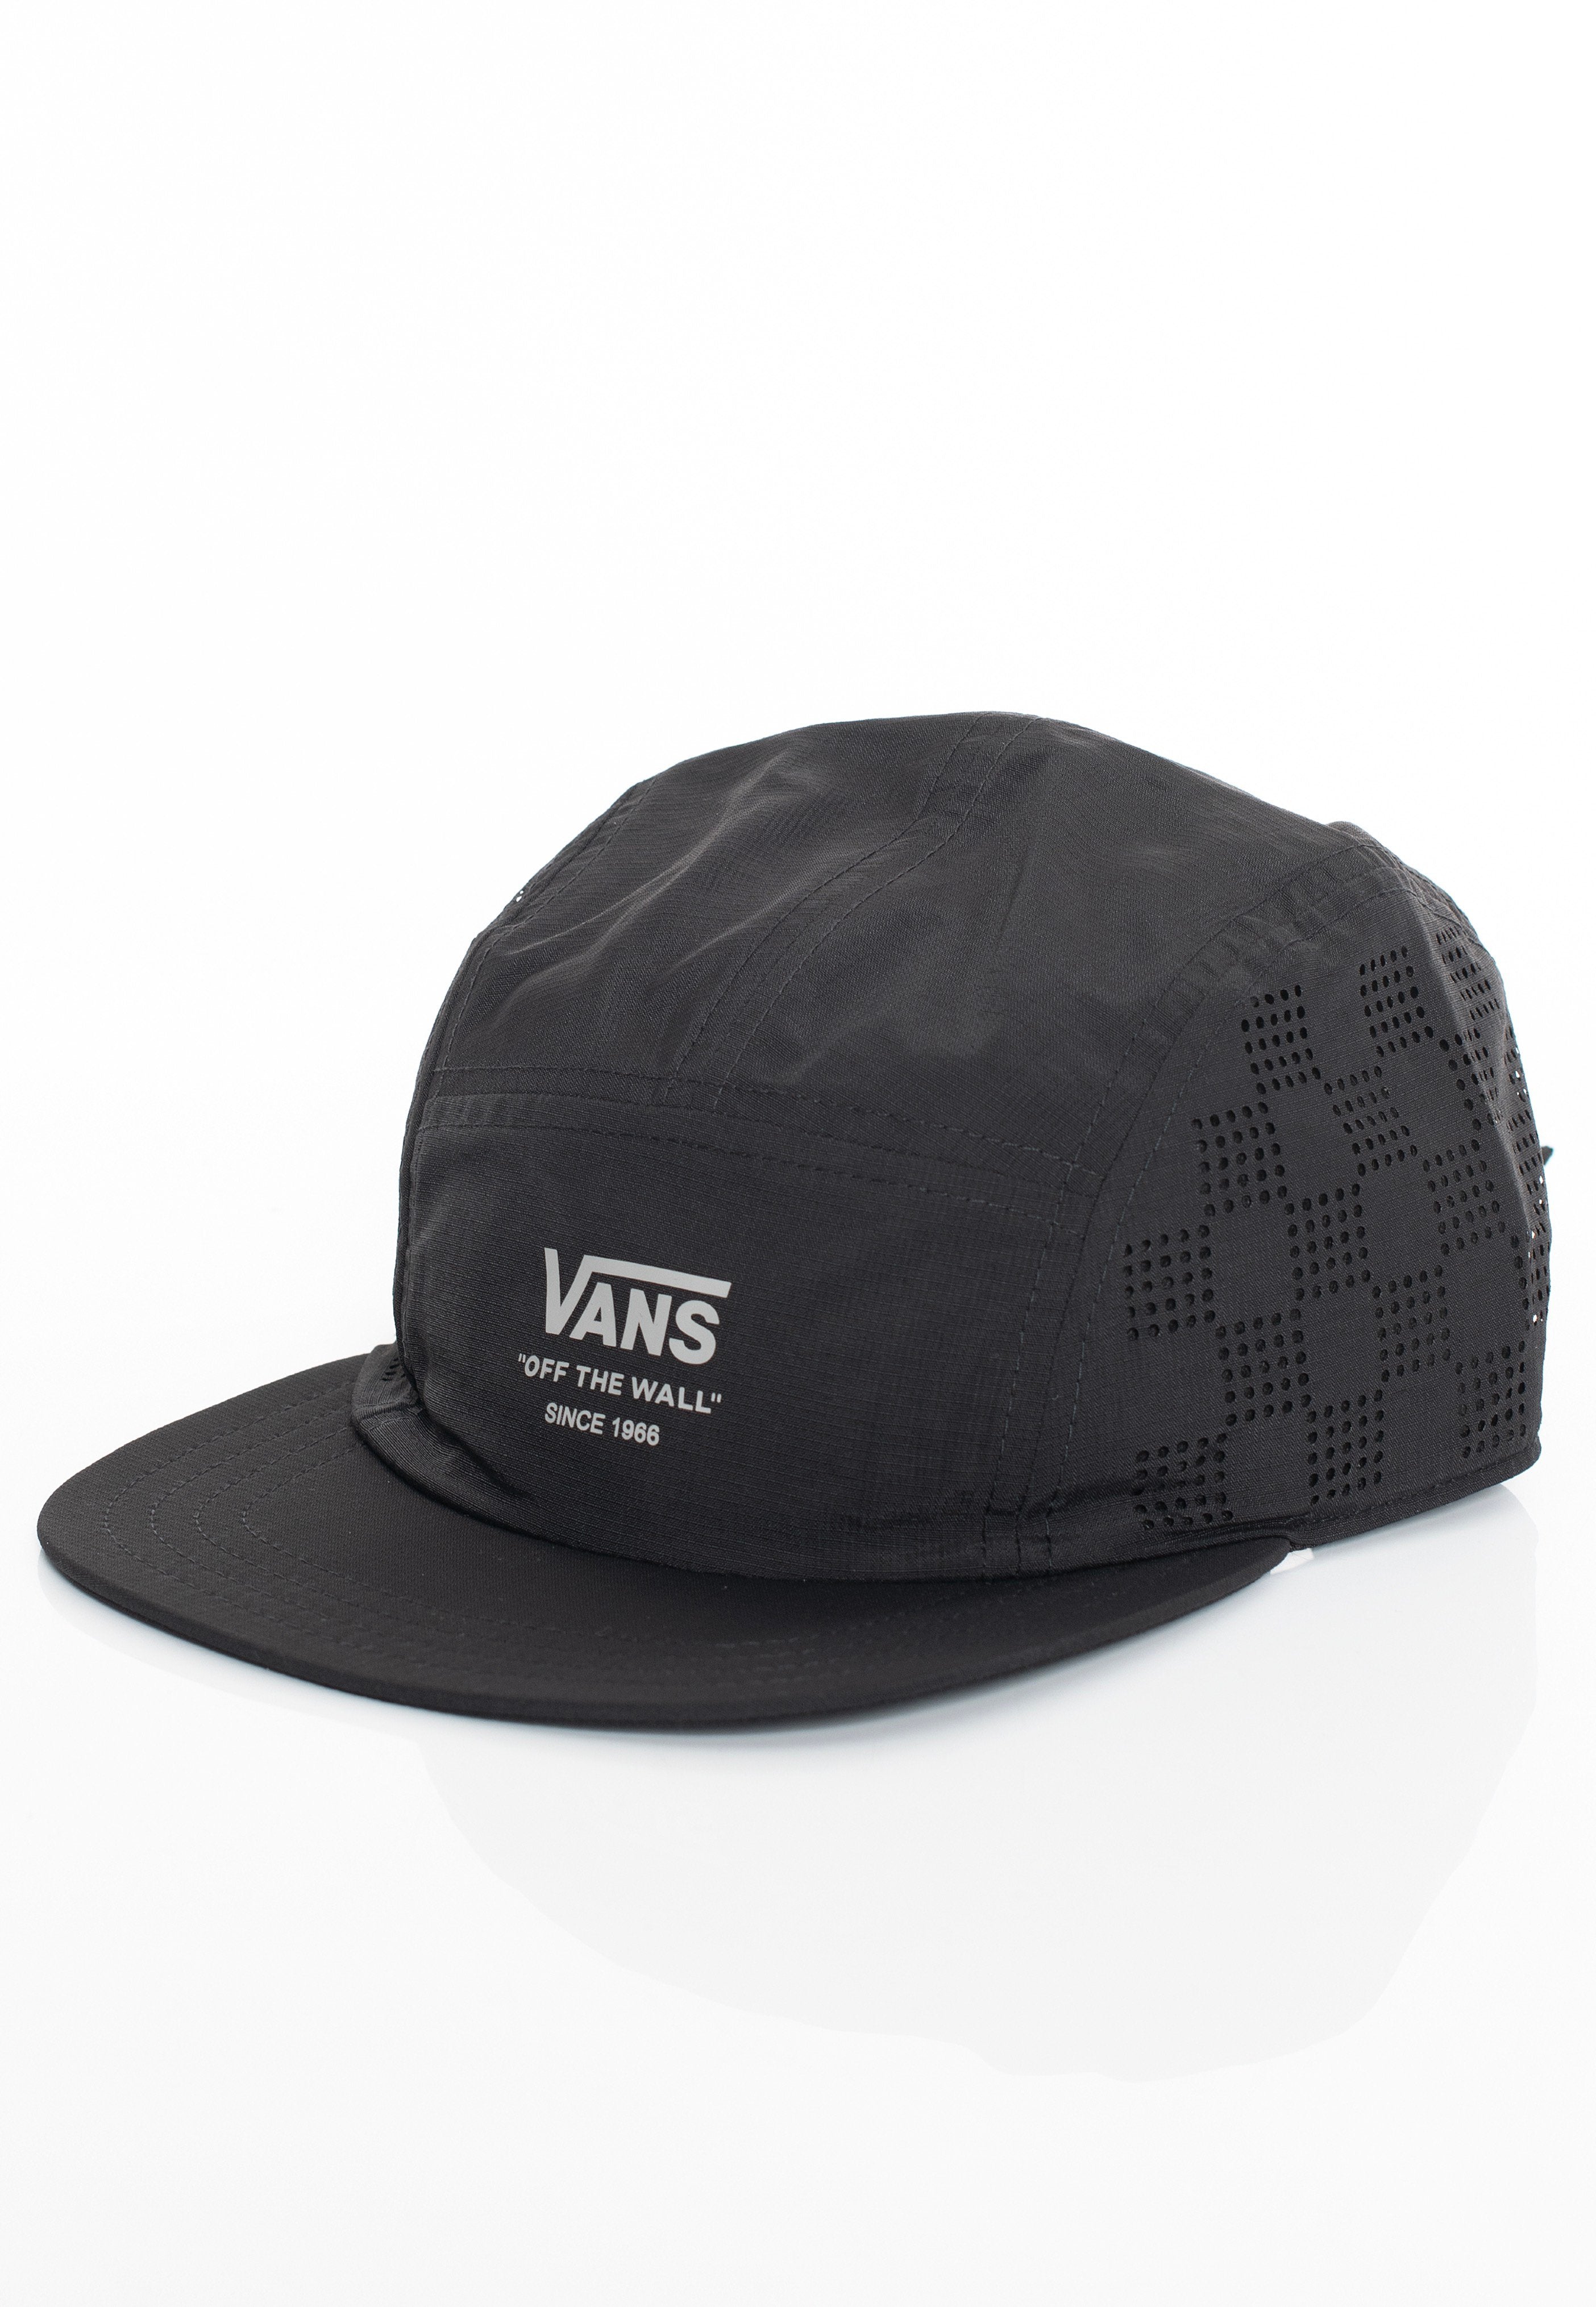 Vans - Outdoors Camper Black - Cap